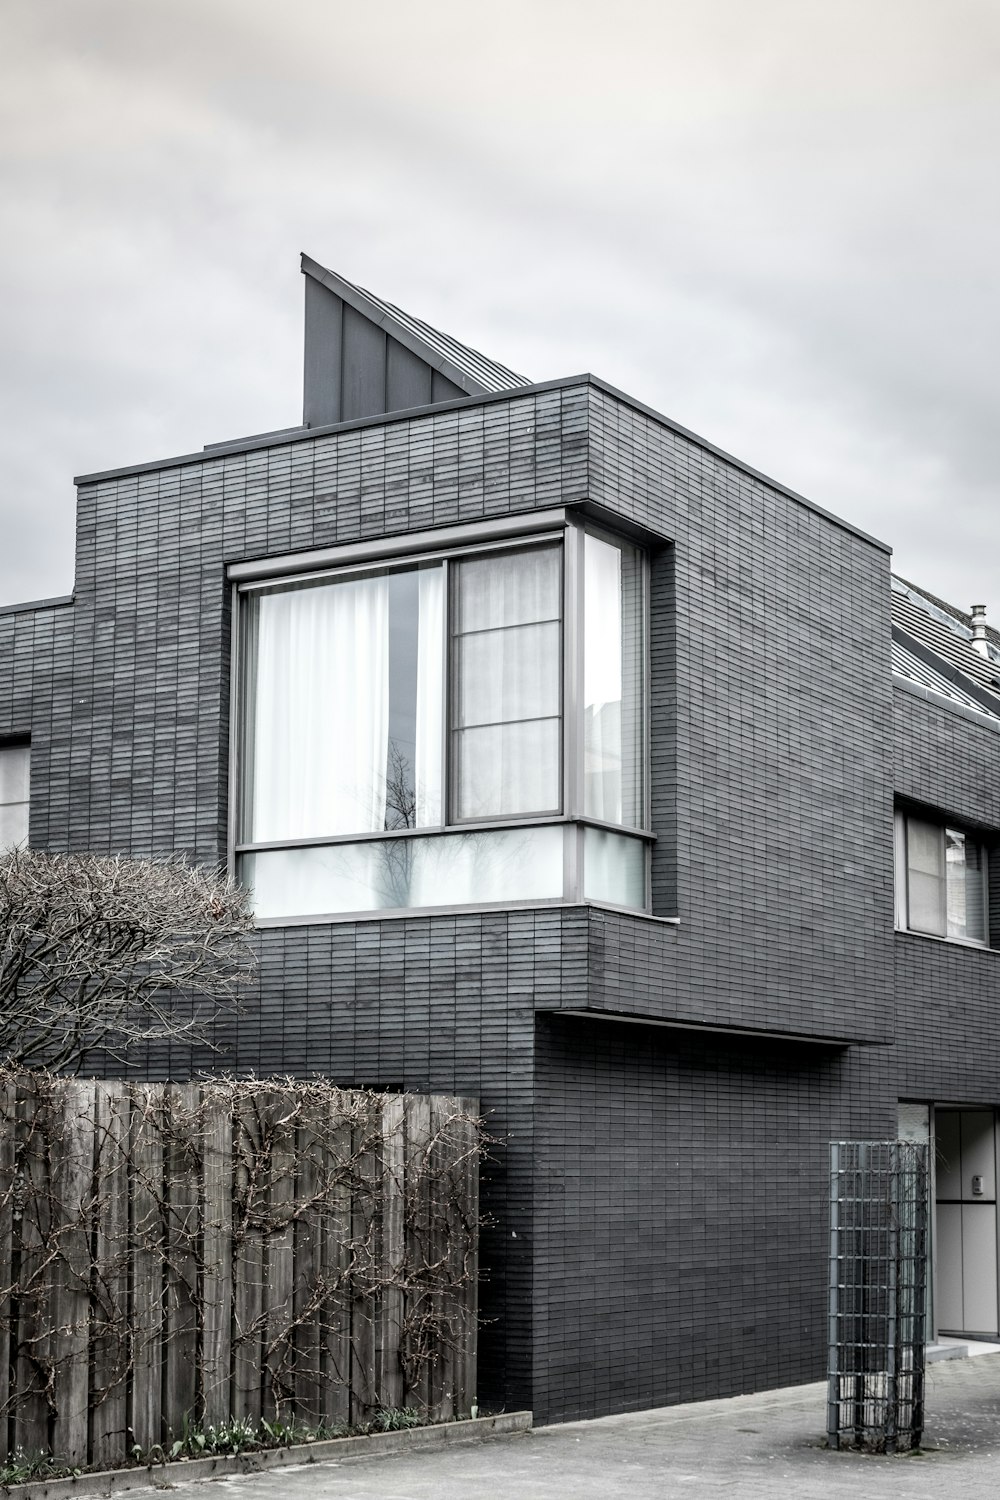 fotografia in scala di grigi di una casa a 2 piani